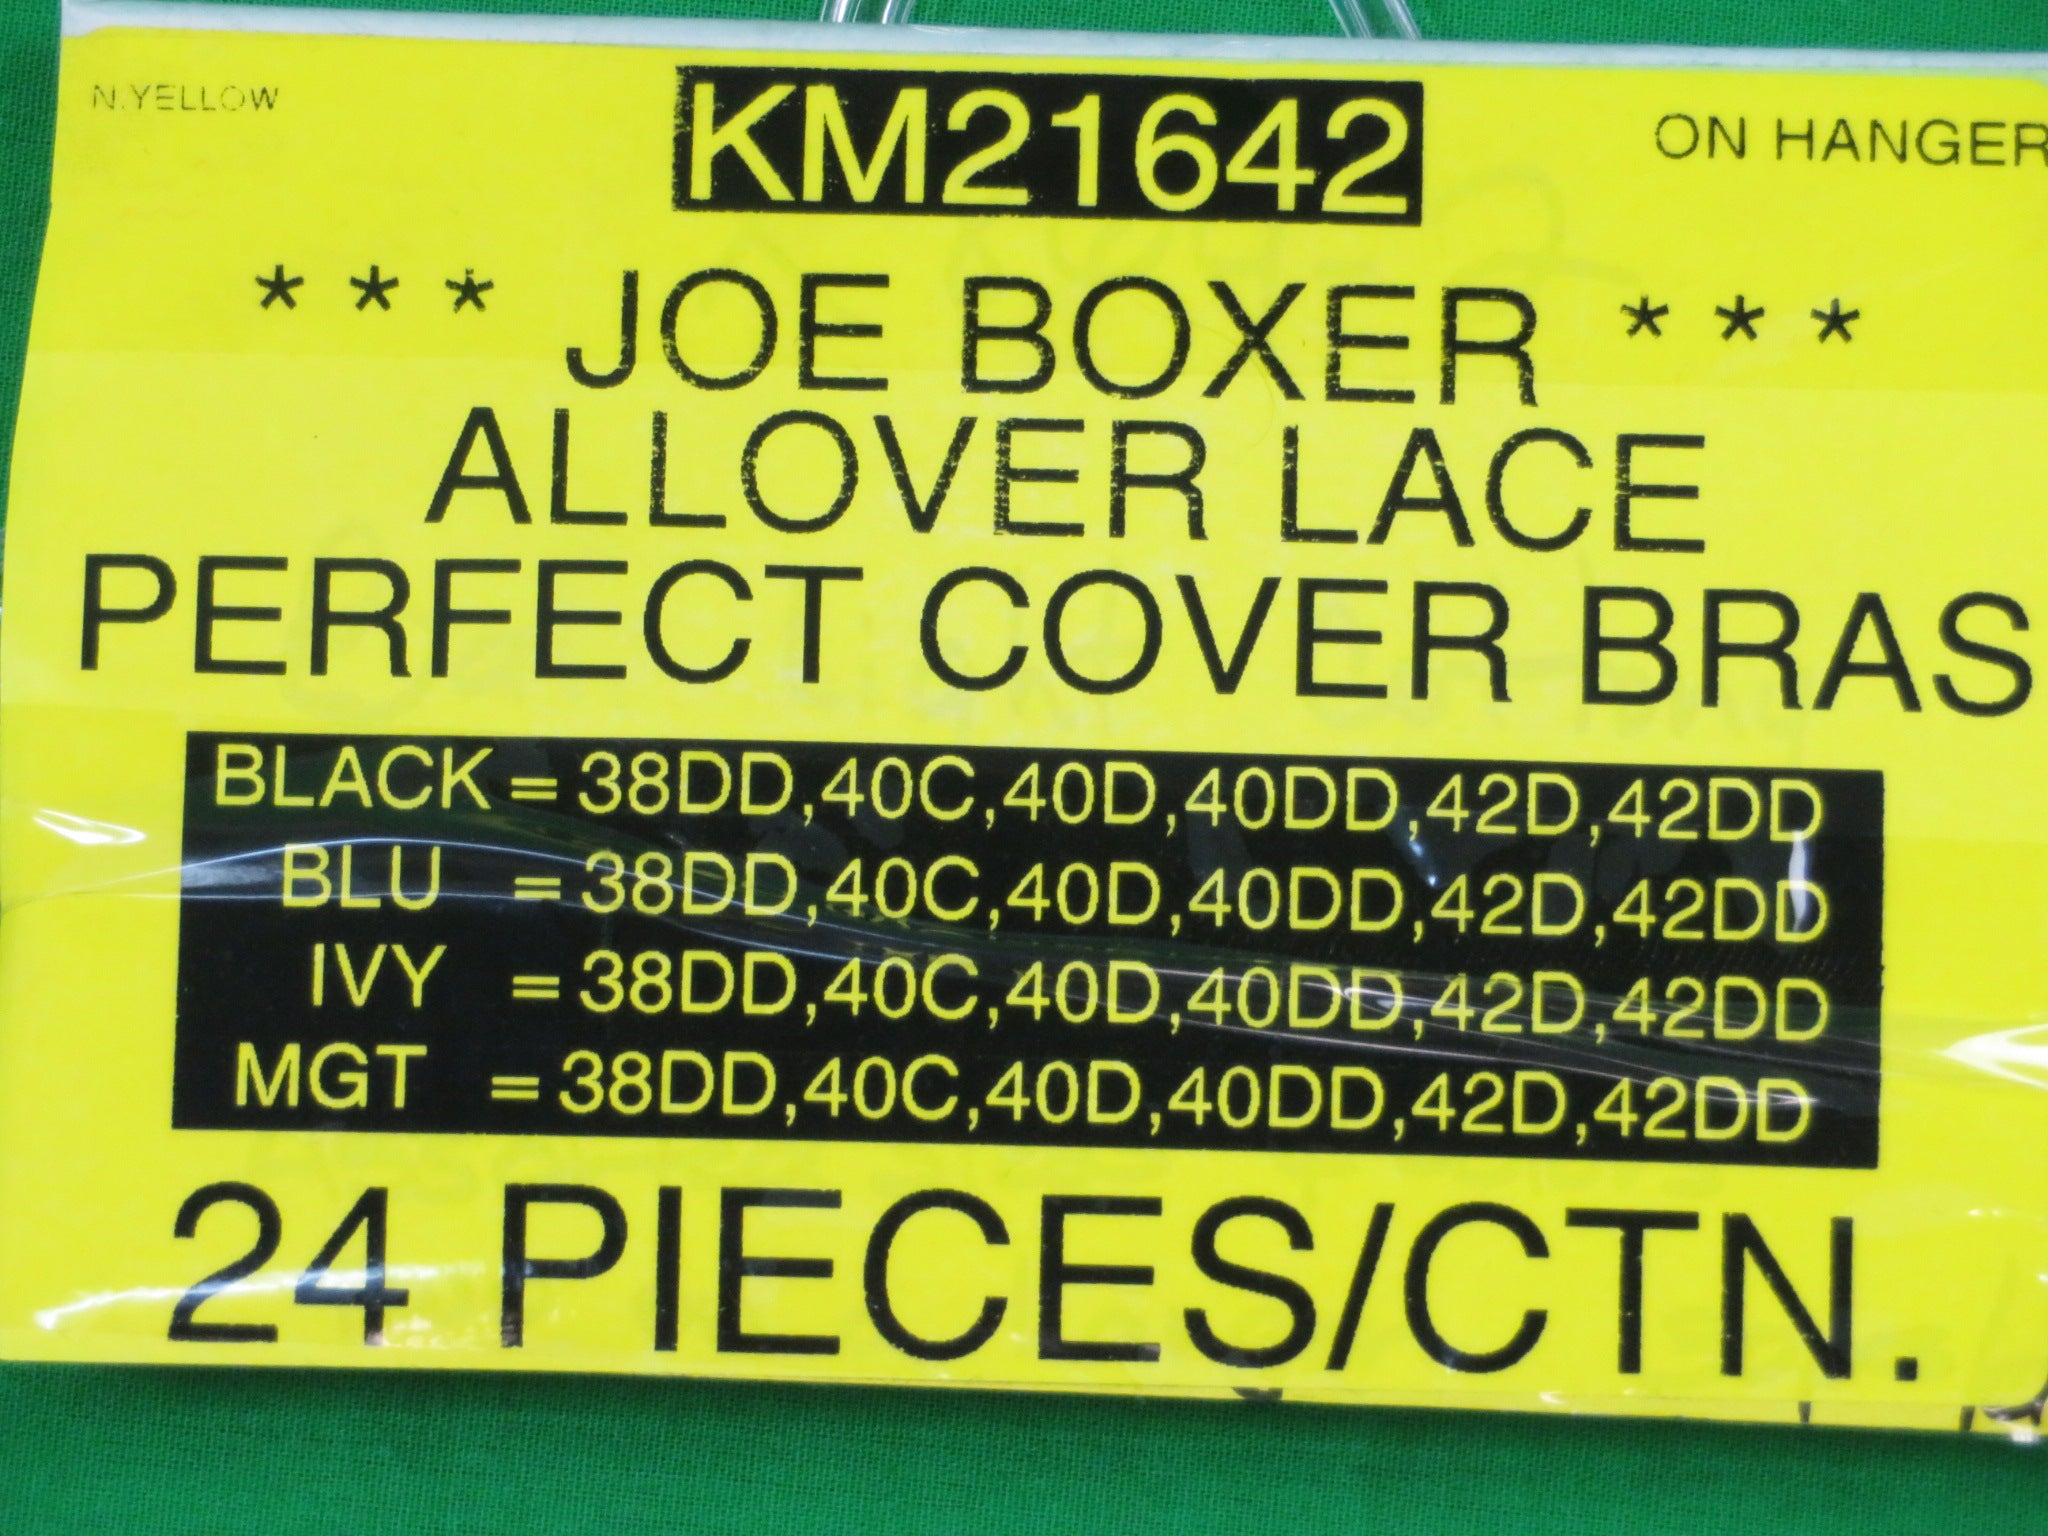 Joe Boxer Lace Bras